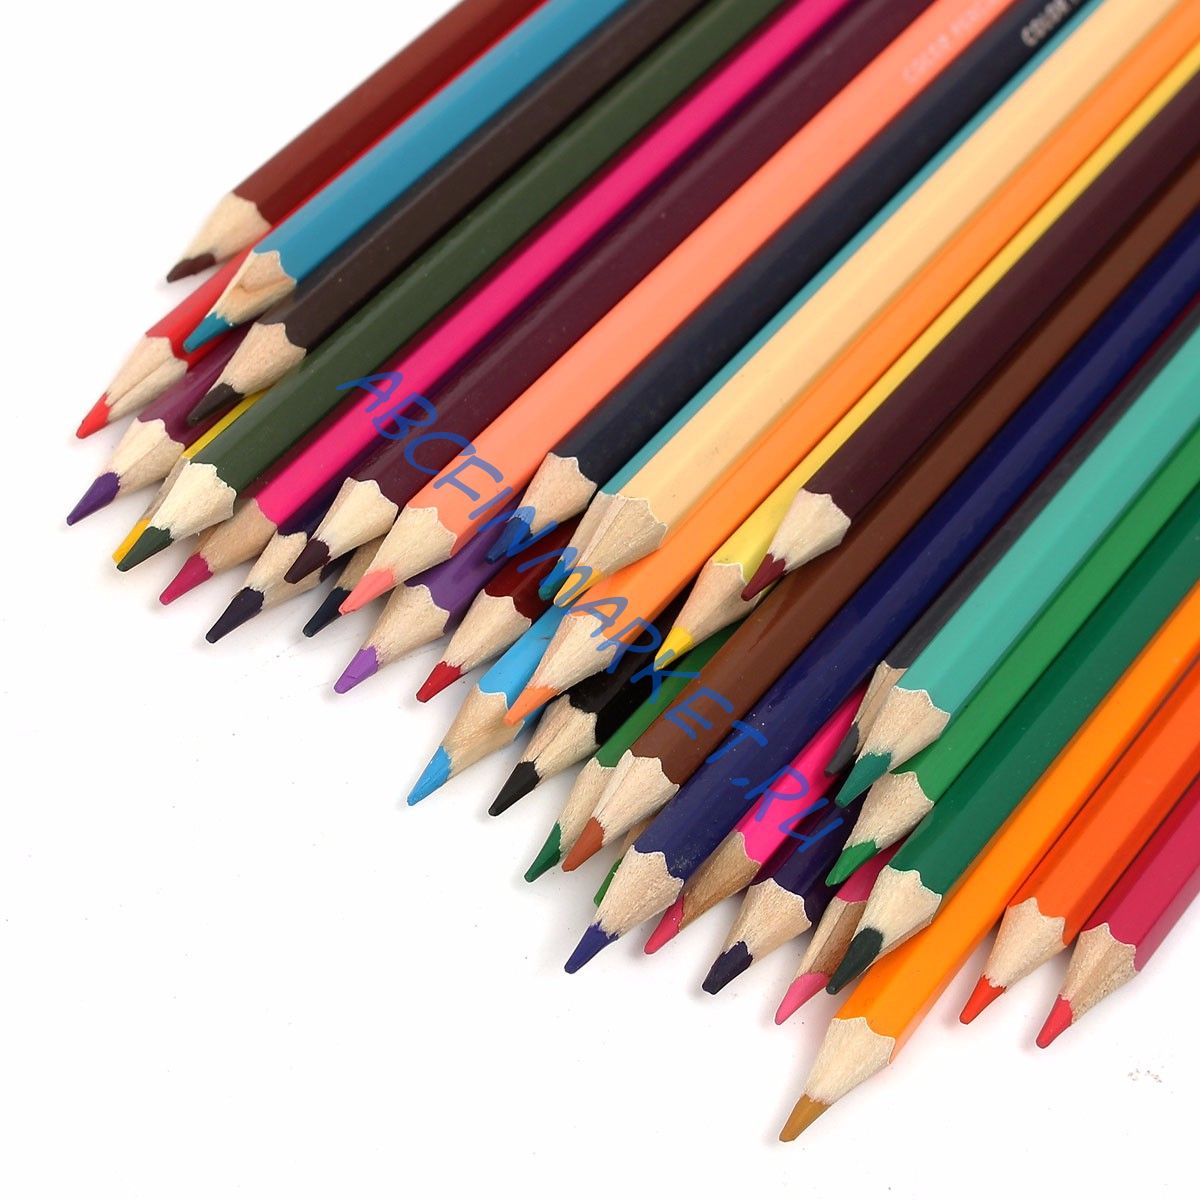 Цветные карандаши artista в жестяной коробке 24 шт